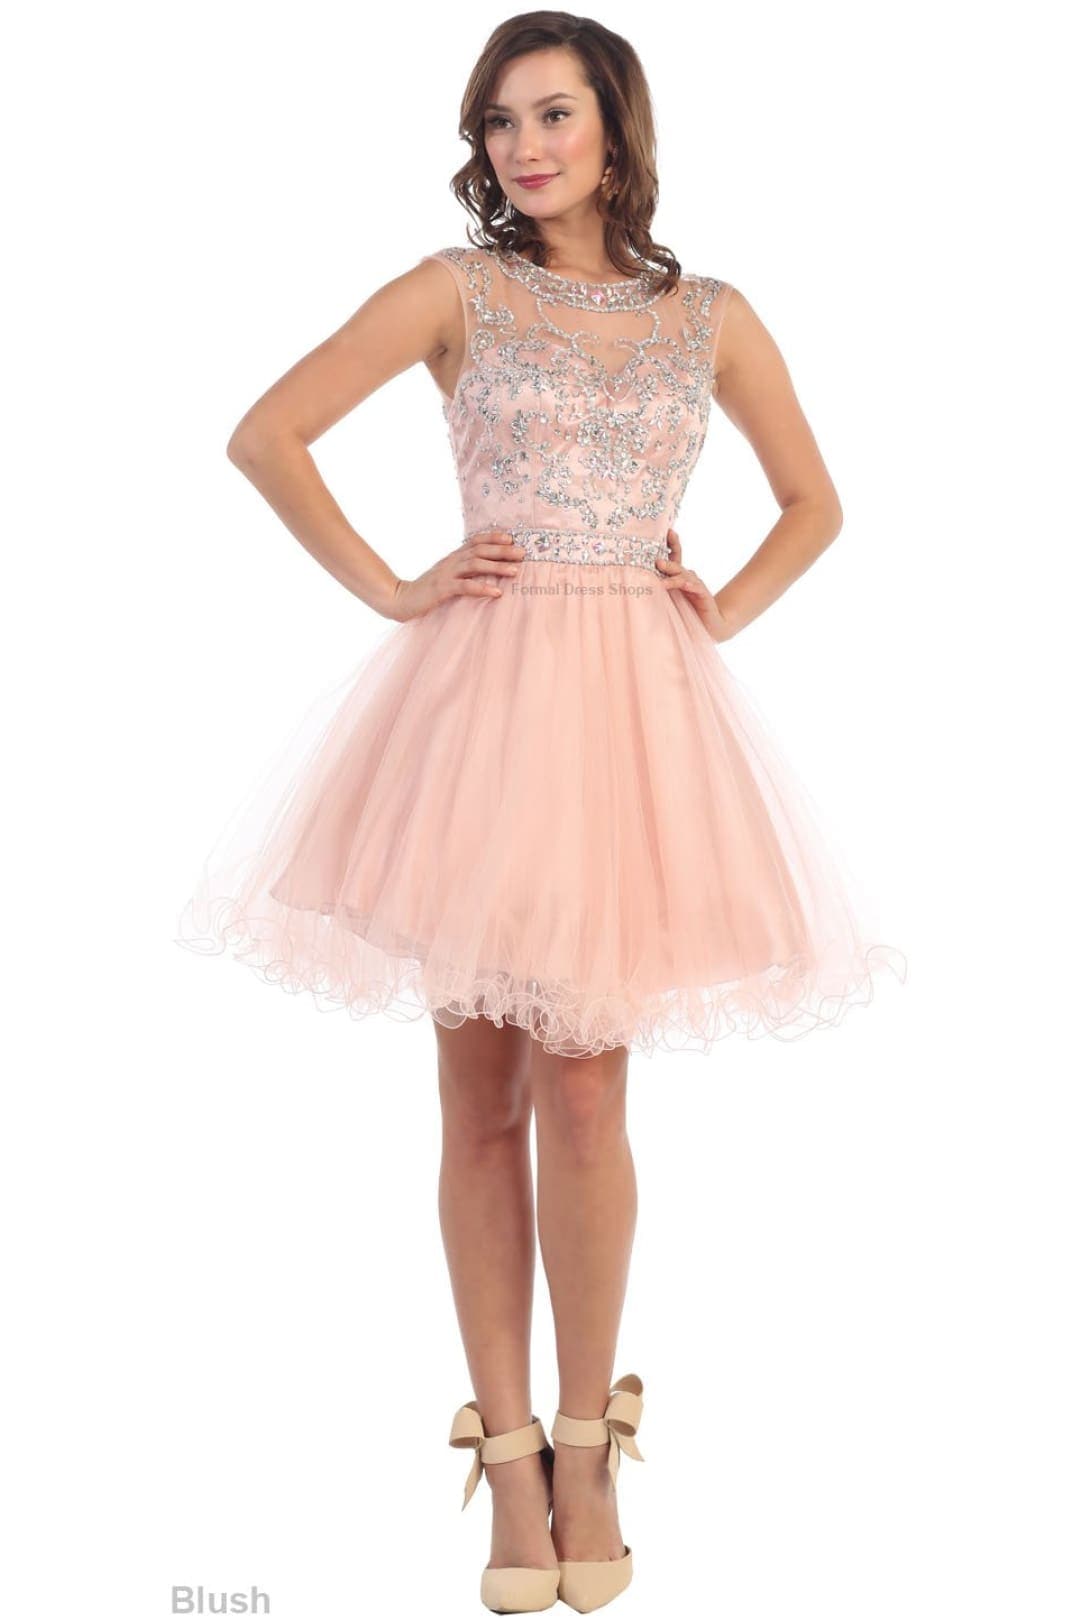 Sale! Exquisite Short Dress - Blush / 10